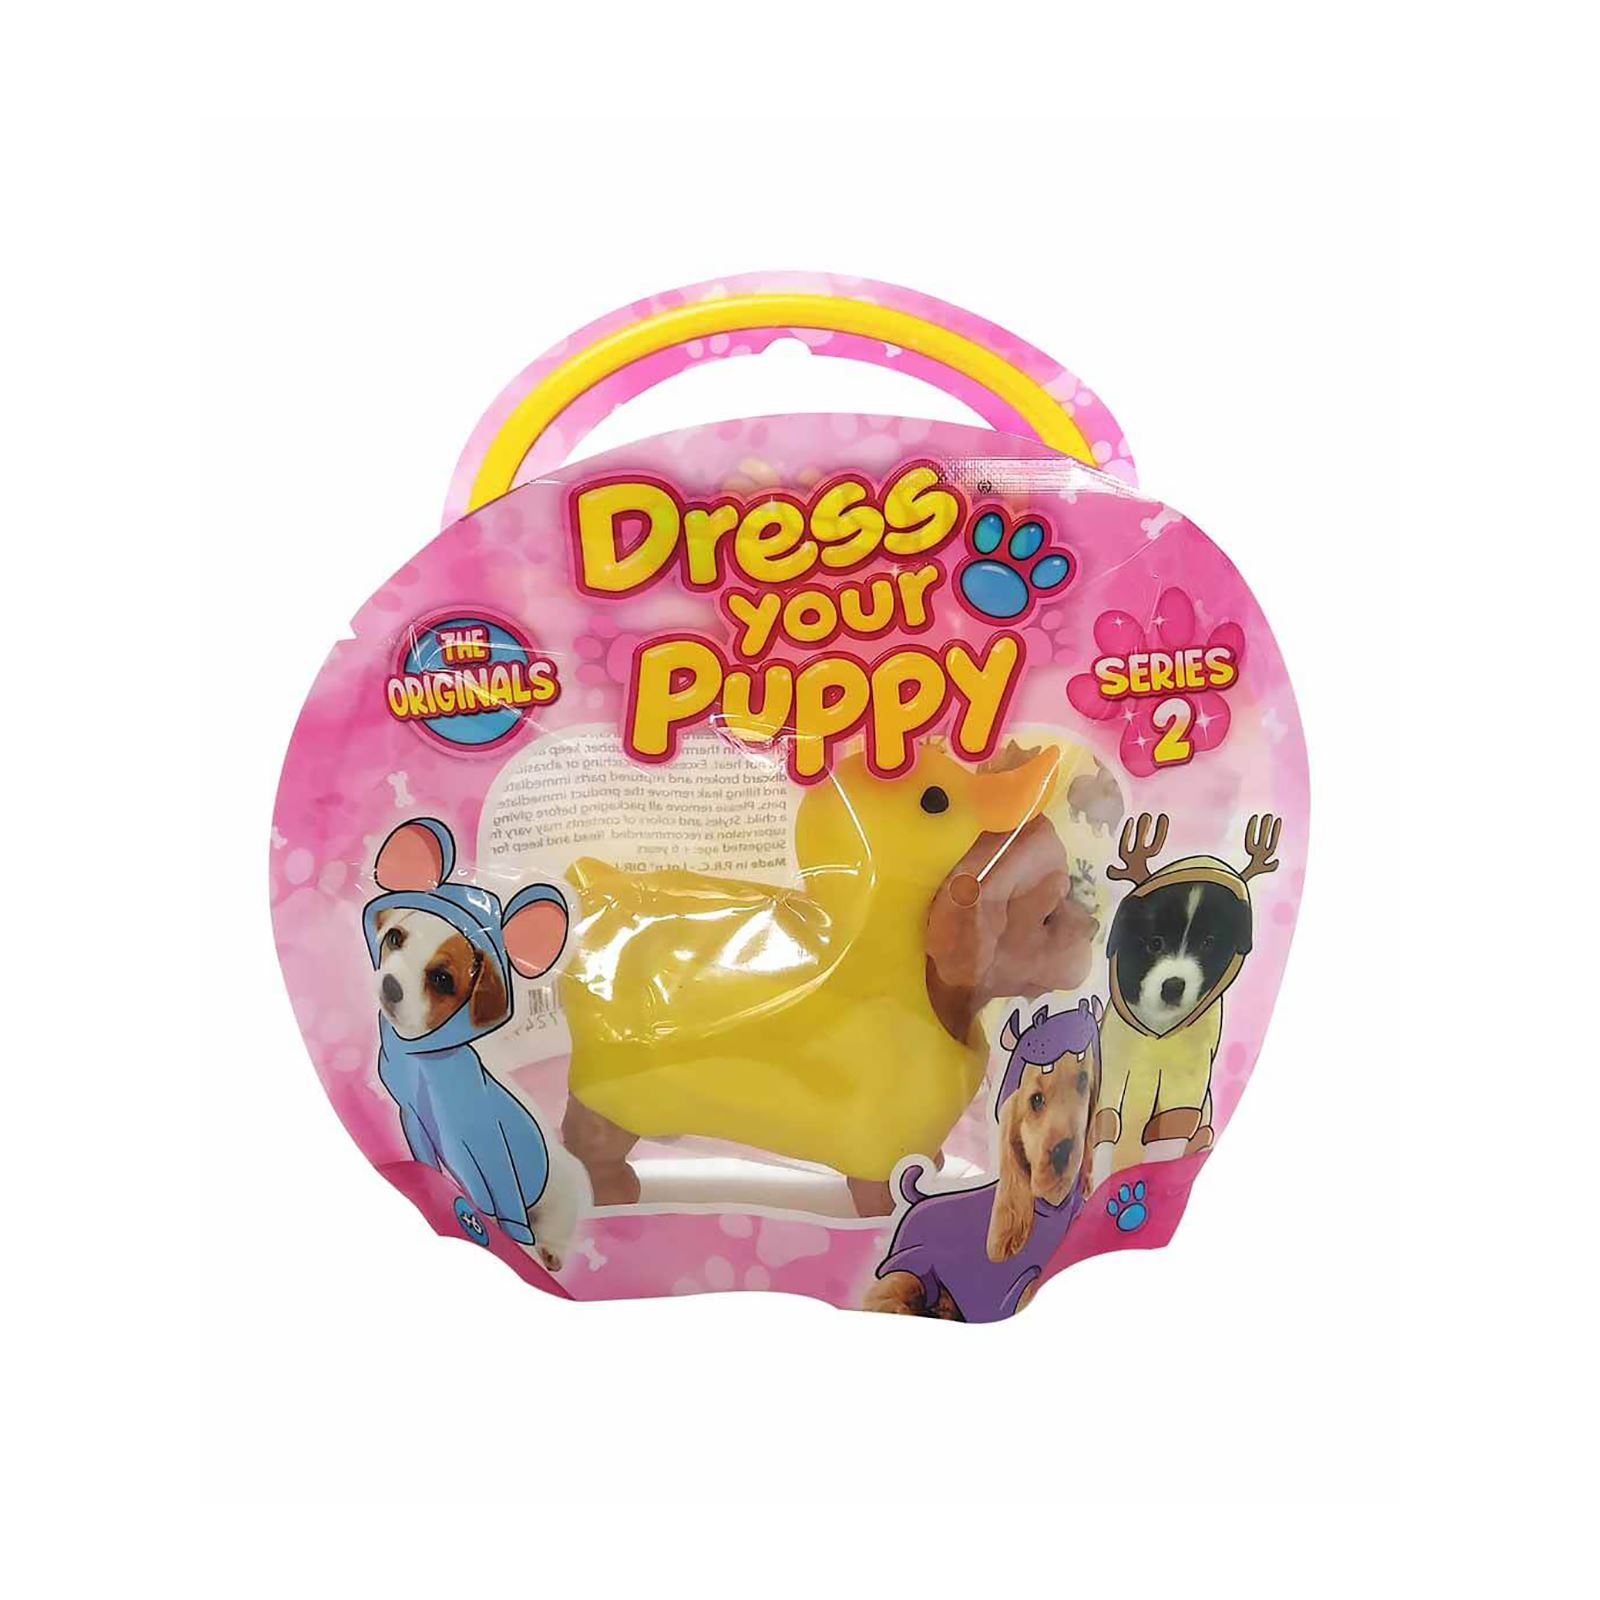 Sunman Oyuncak Diramix Dress Your Puppy Kostümlü Figürler Sarı